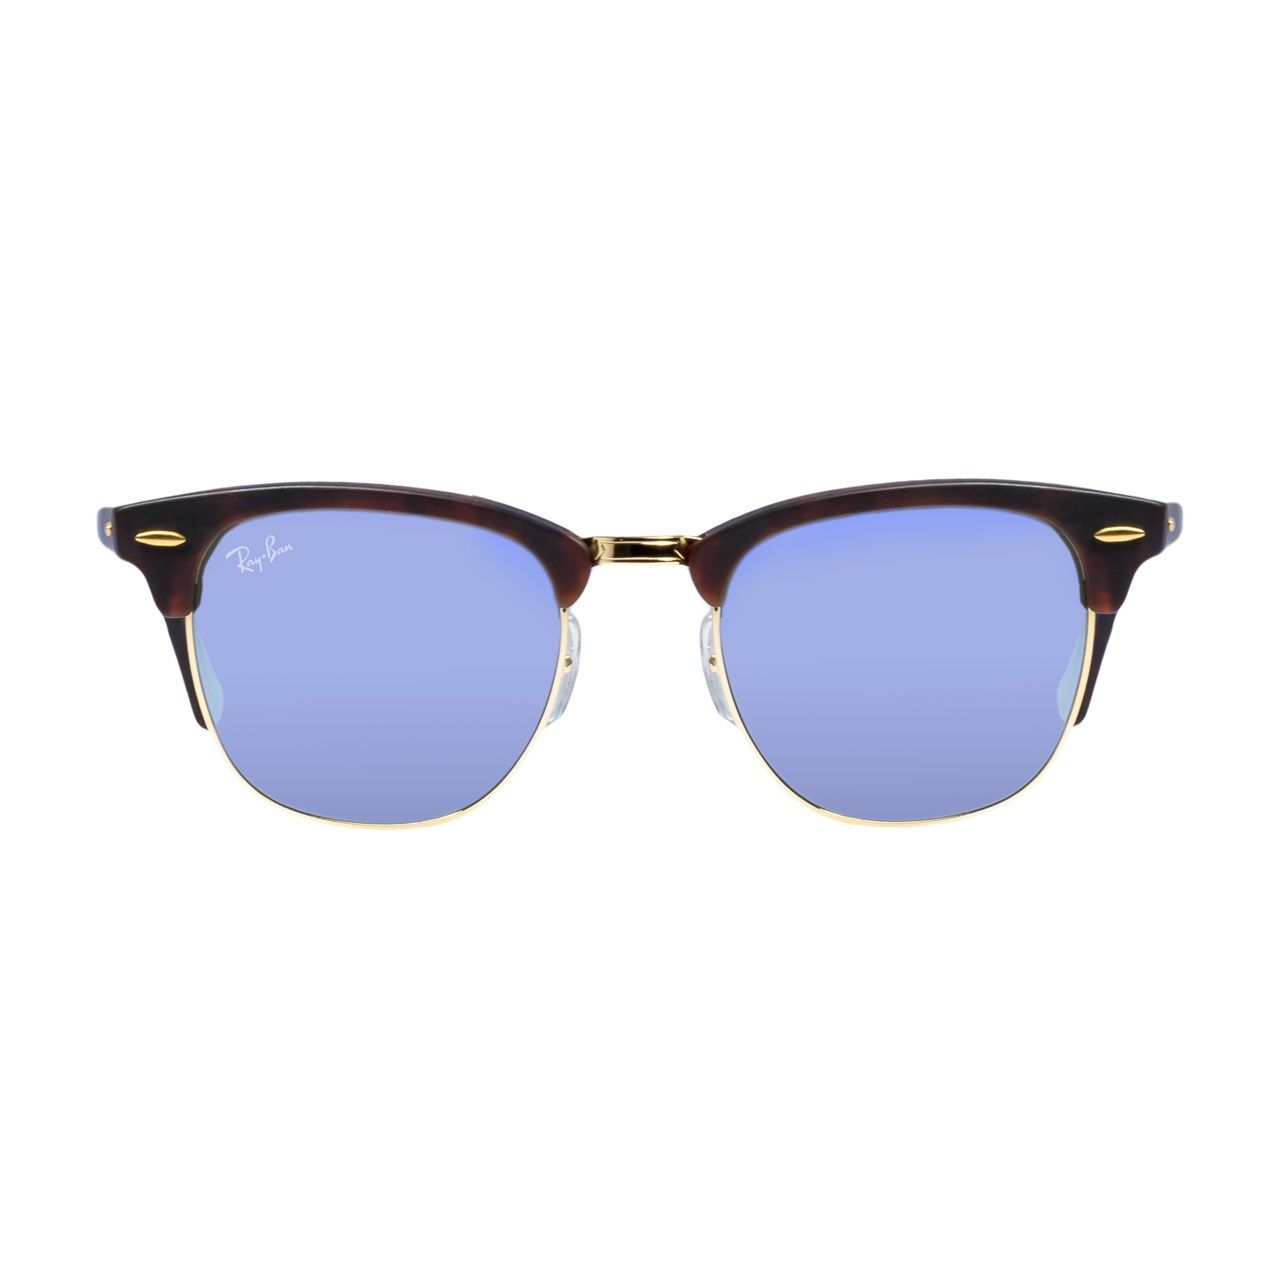 عینک آفتابی ری بن سری Club Master مدل RB 3016 - 1145/30